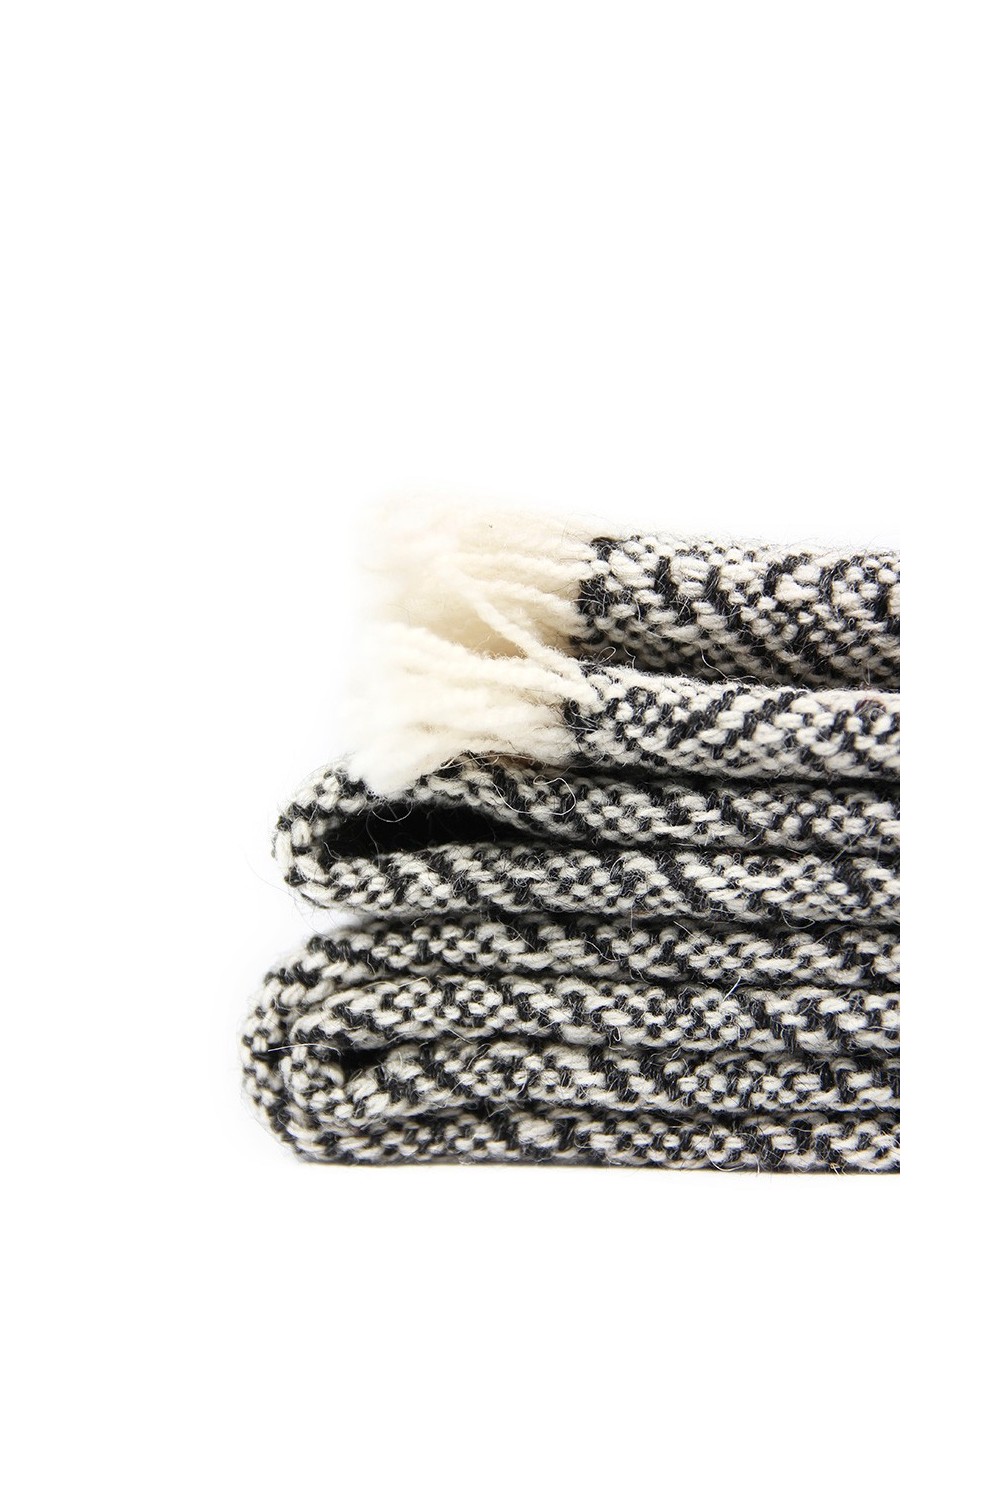 Manta de lana hecho a mano en telar